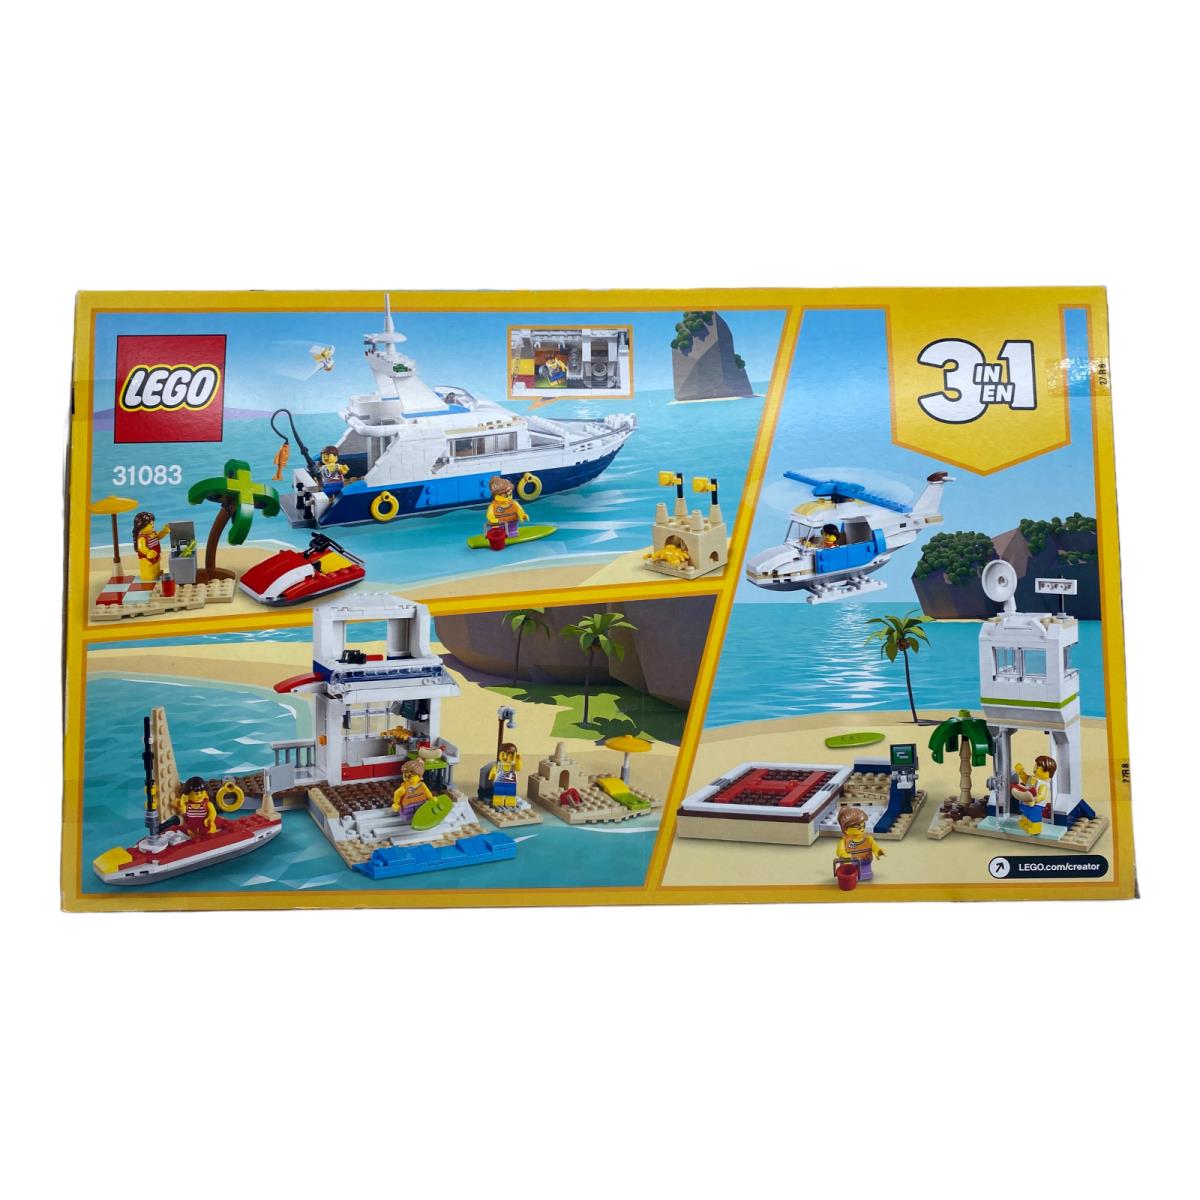 Lego Creator 31083 Cruising Adventures 3 in 1